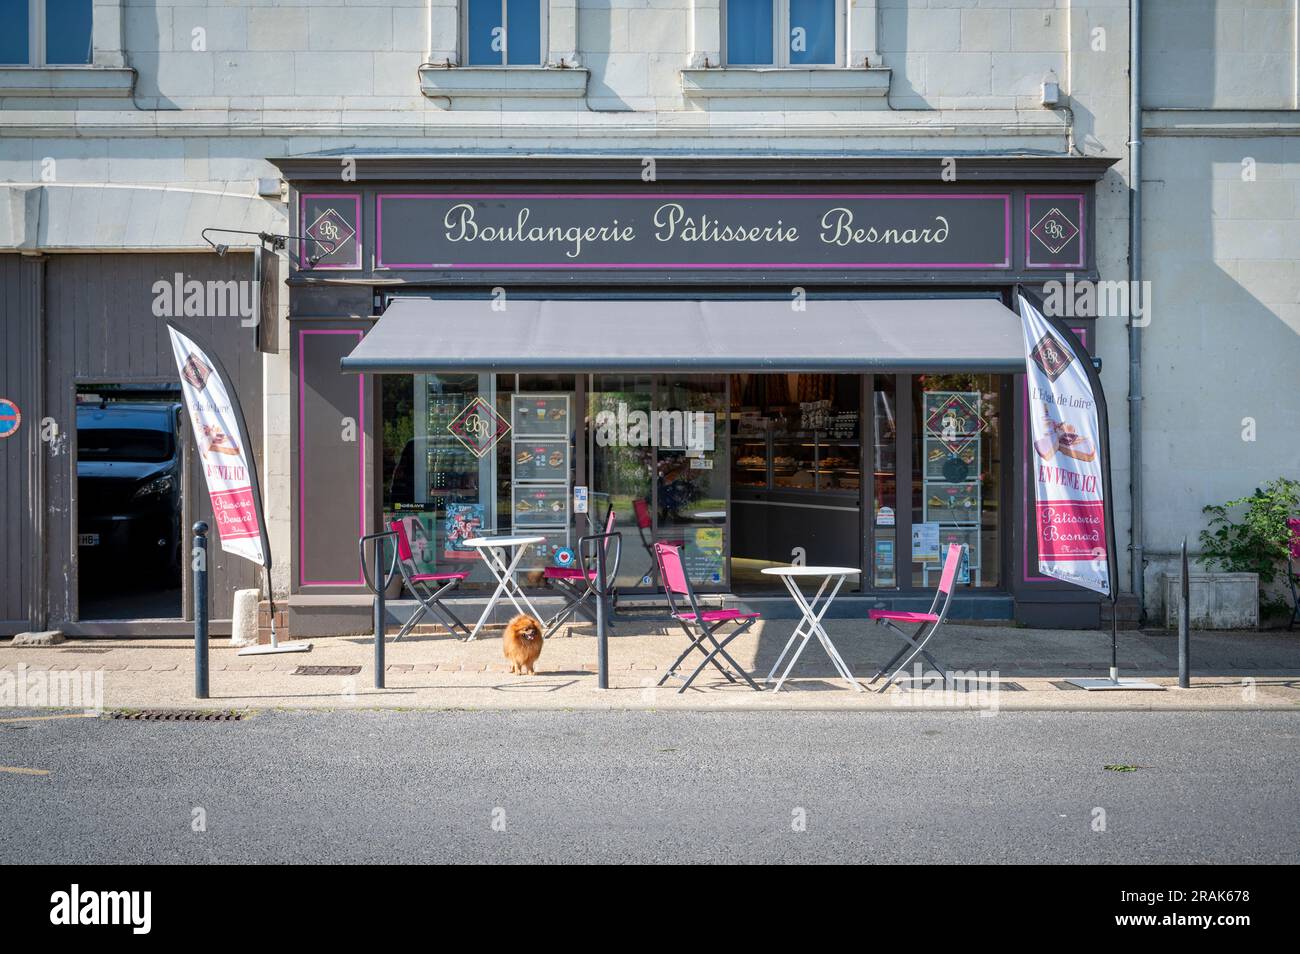 Die Boulangerie Patisserie Besnard Montsoreau Loire Valley Frankreich. Stockfoto